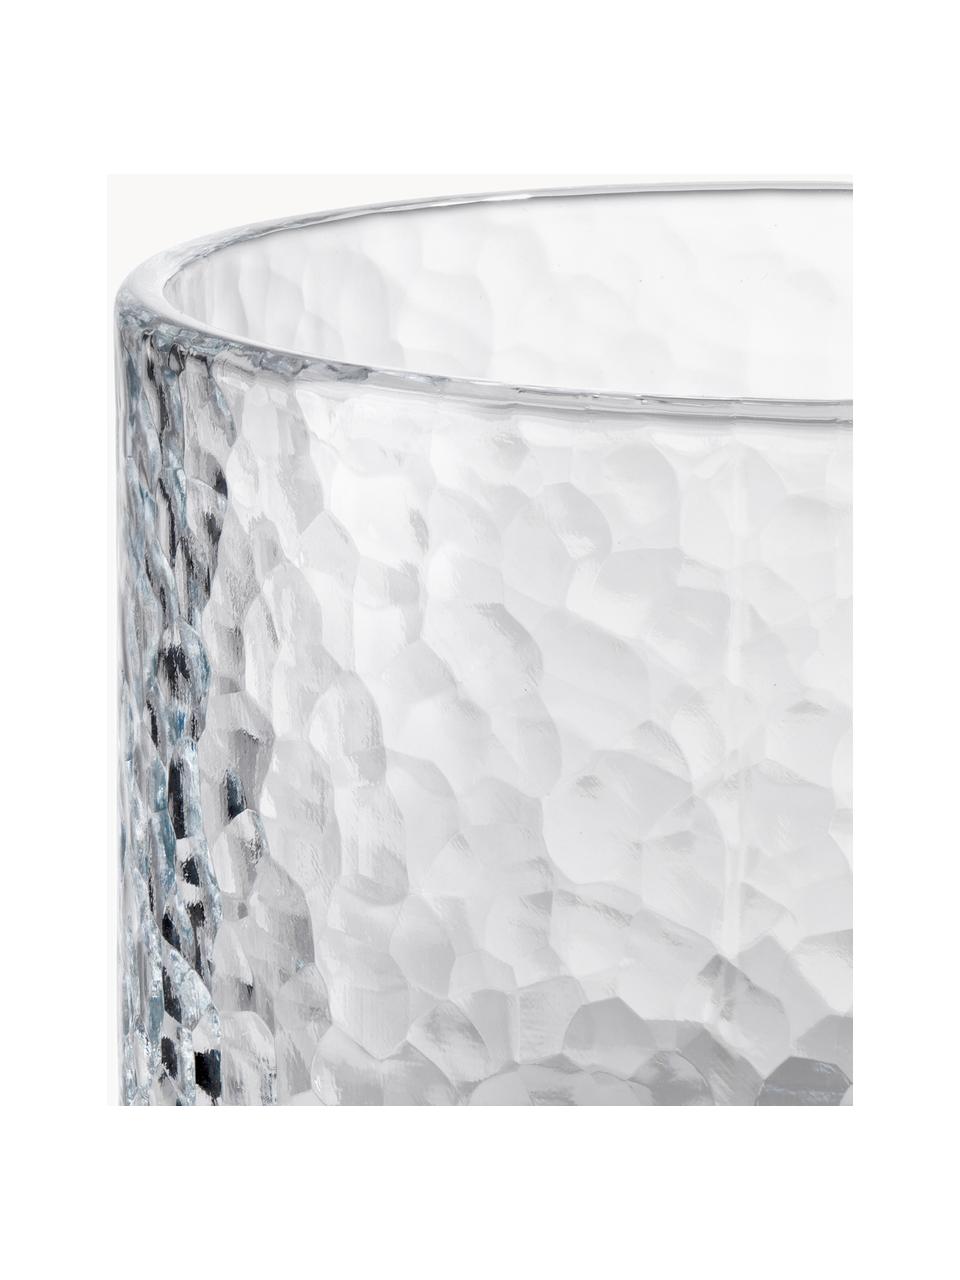 Waterglazen Forma met gestructureerde oppervlak, 2 stuks, Glas, Transparant, Ø 9 x H 10 cm, 300 ml